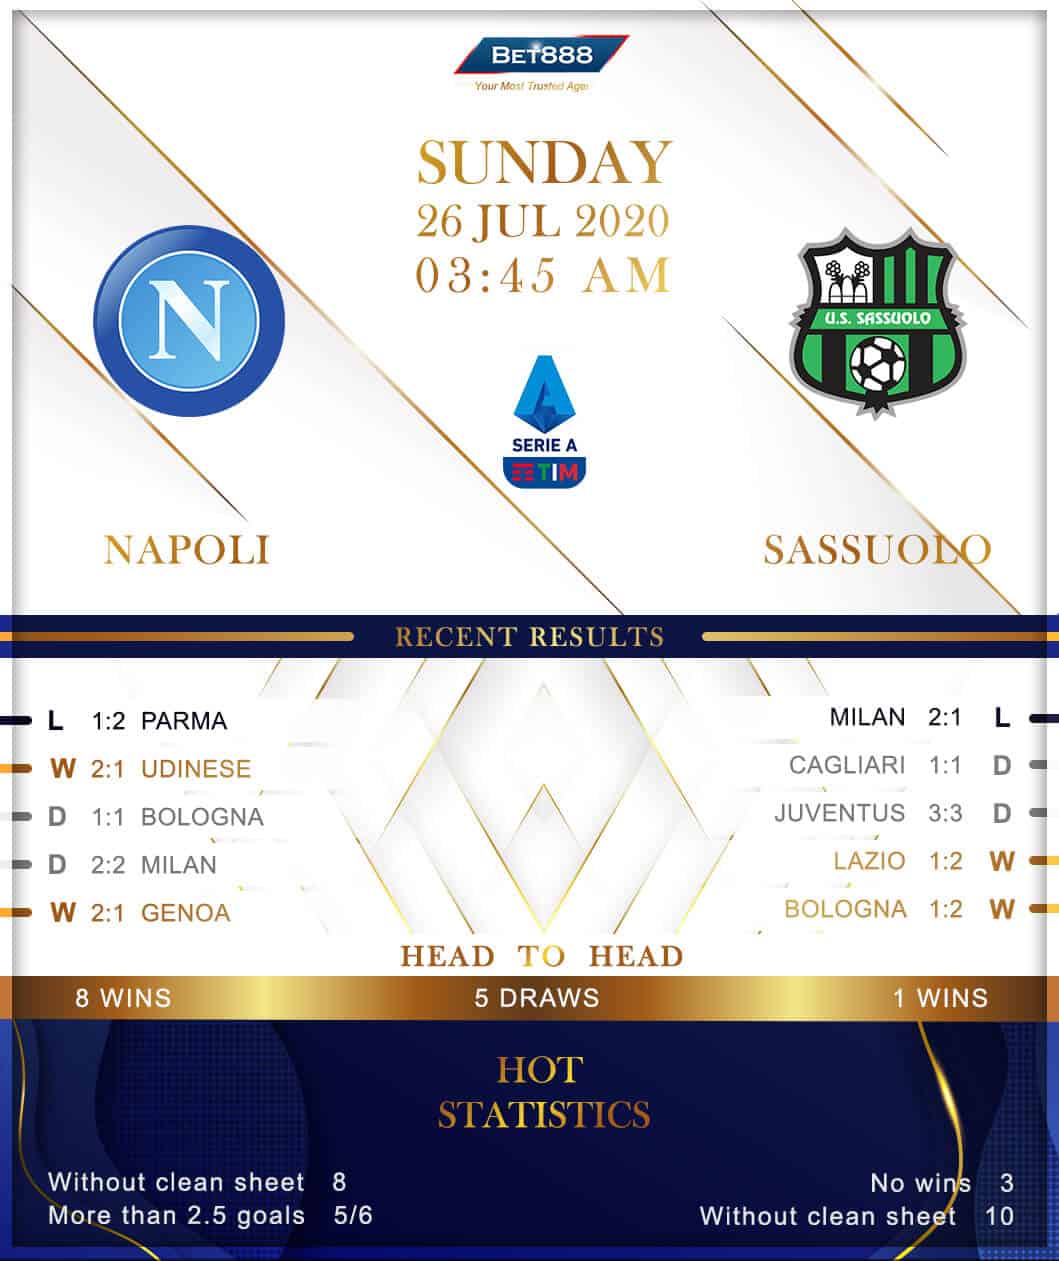 Napoli vs Sassuolo 26/07/20